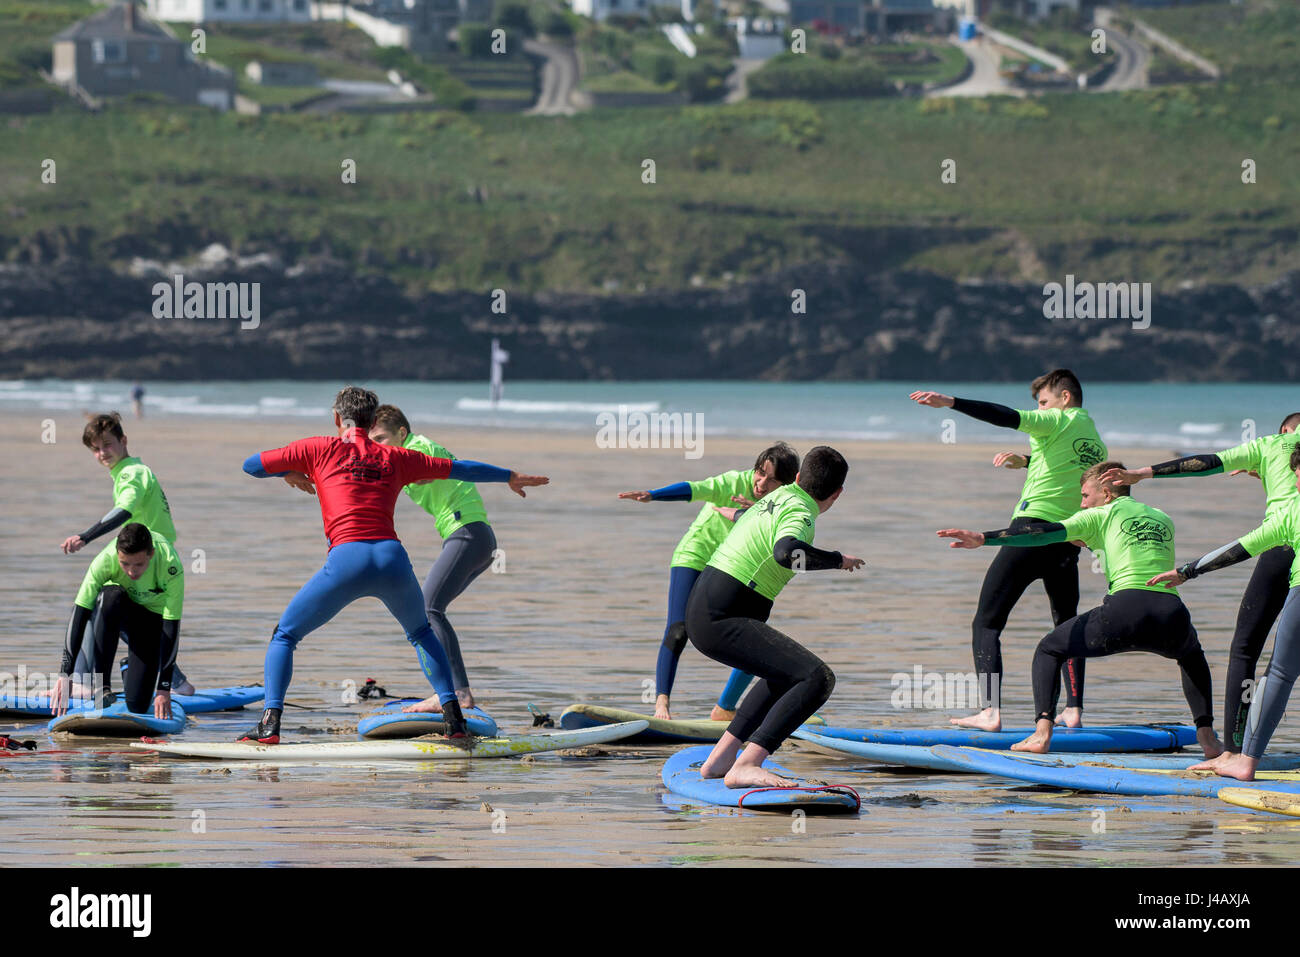 Ein Surflehrer Schule unterrichten Anfänger Newquay Cornwall Surfen Surfer Lernenden lernen Coaching Unterricht unterrichten Stockfoto